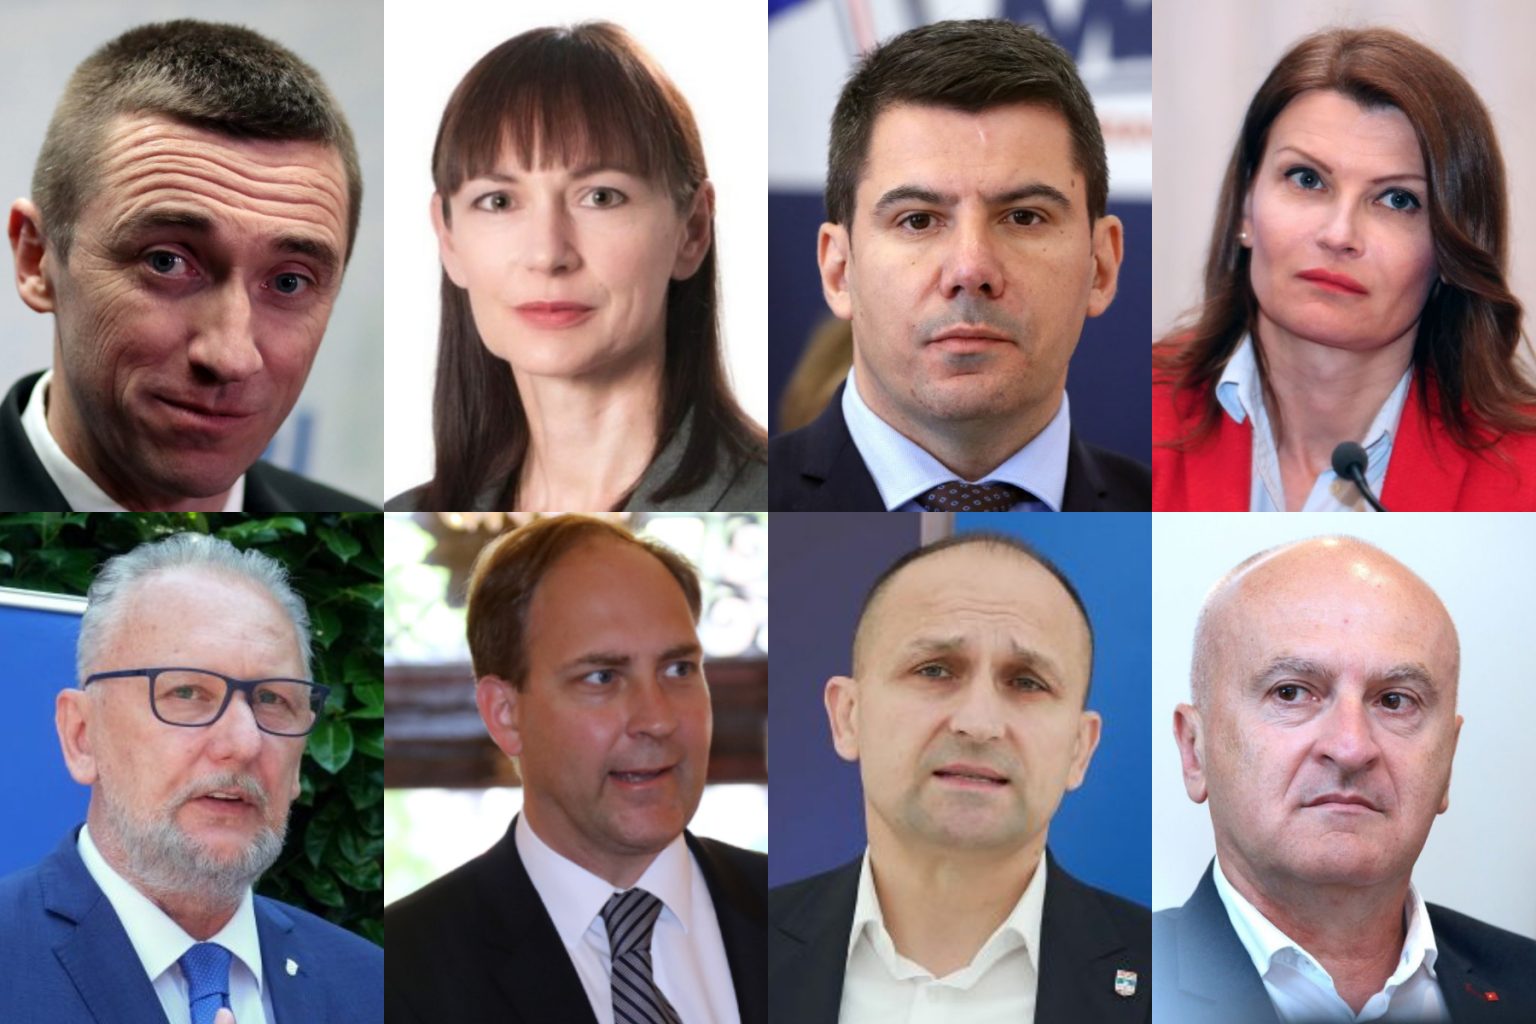 Parlamentarni izbori Donosimo kandidate 4 najveće stranke u IV., V. i